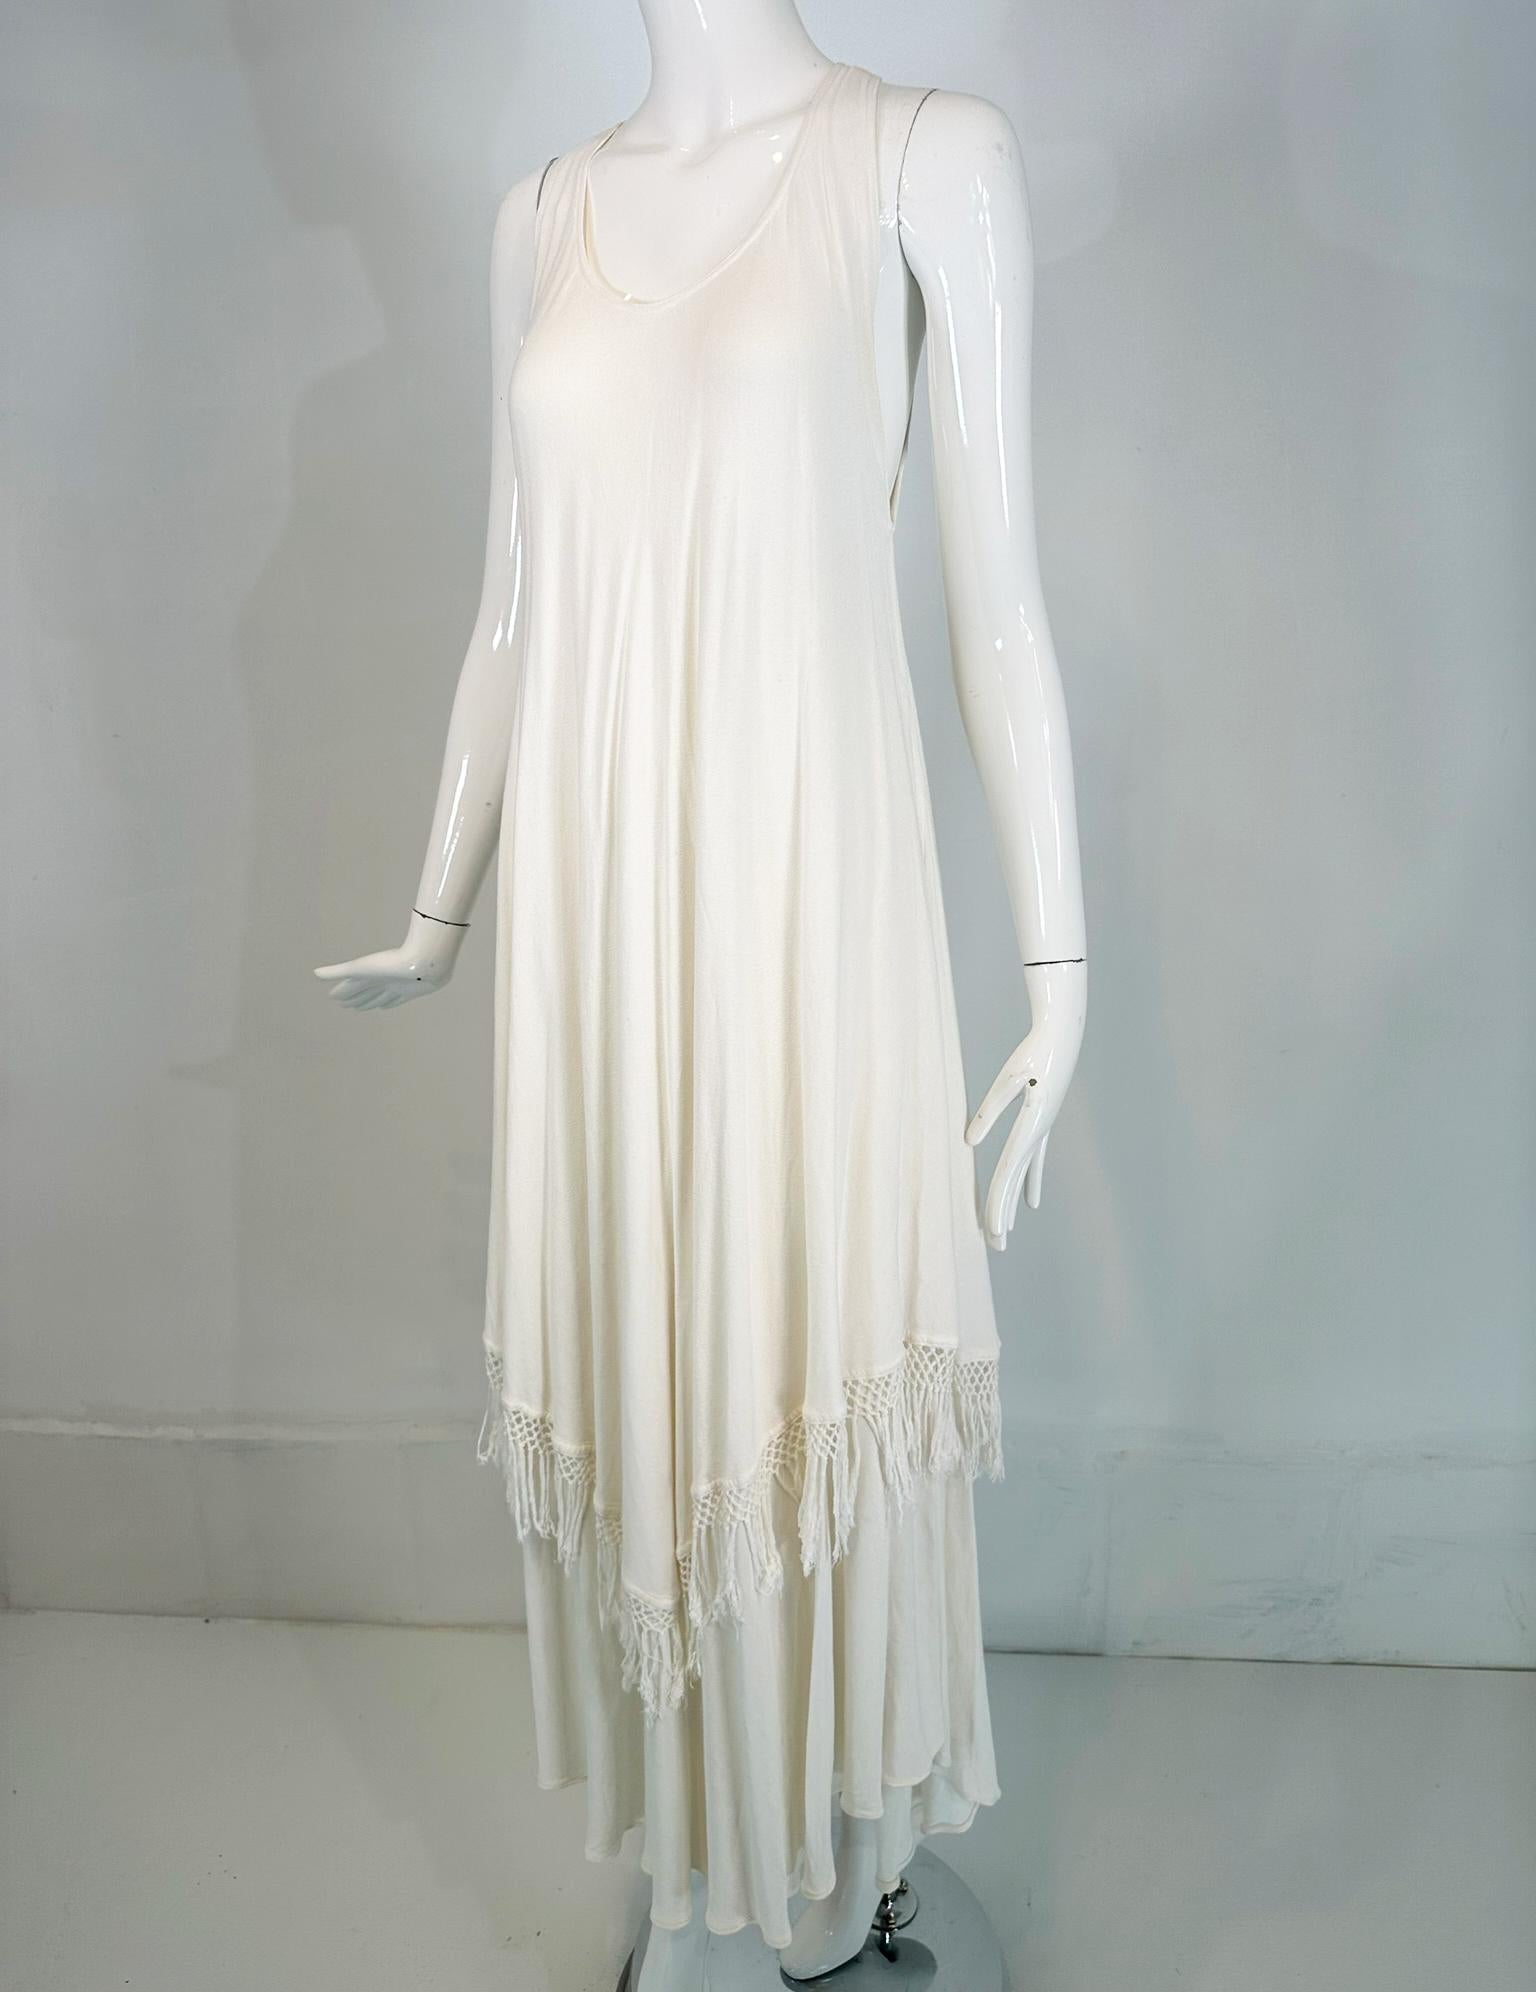 Weißes, ärmelloses Kleid aus den 1990er-Jahren mit Lagen und Fransen an der Schulter von Laise Adzer. Weiches, weißes Sommerkleid aus 80% Baumwolle und 20% Viskose von Laise Adzer, Marokko. Das schräg geschnittene Kleid ist im Brustbereich tailliert